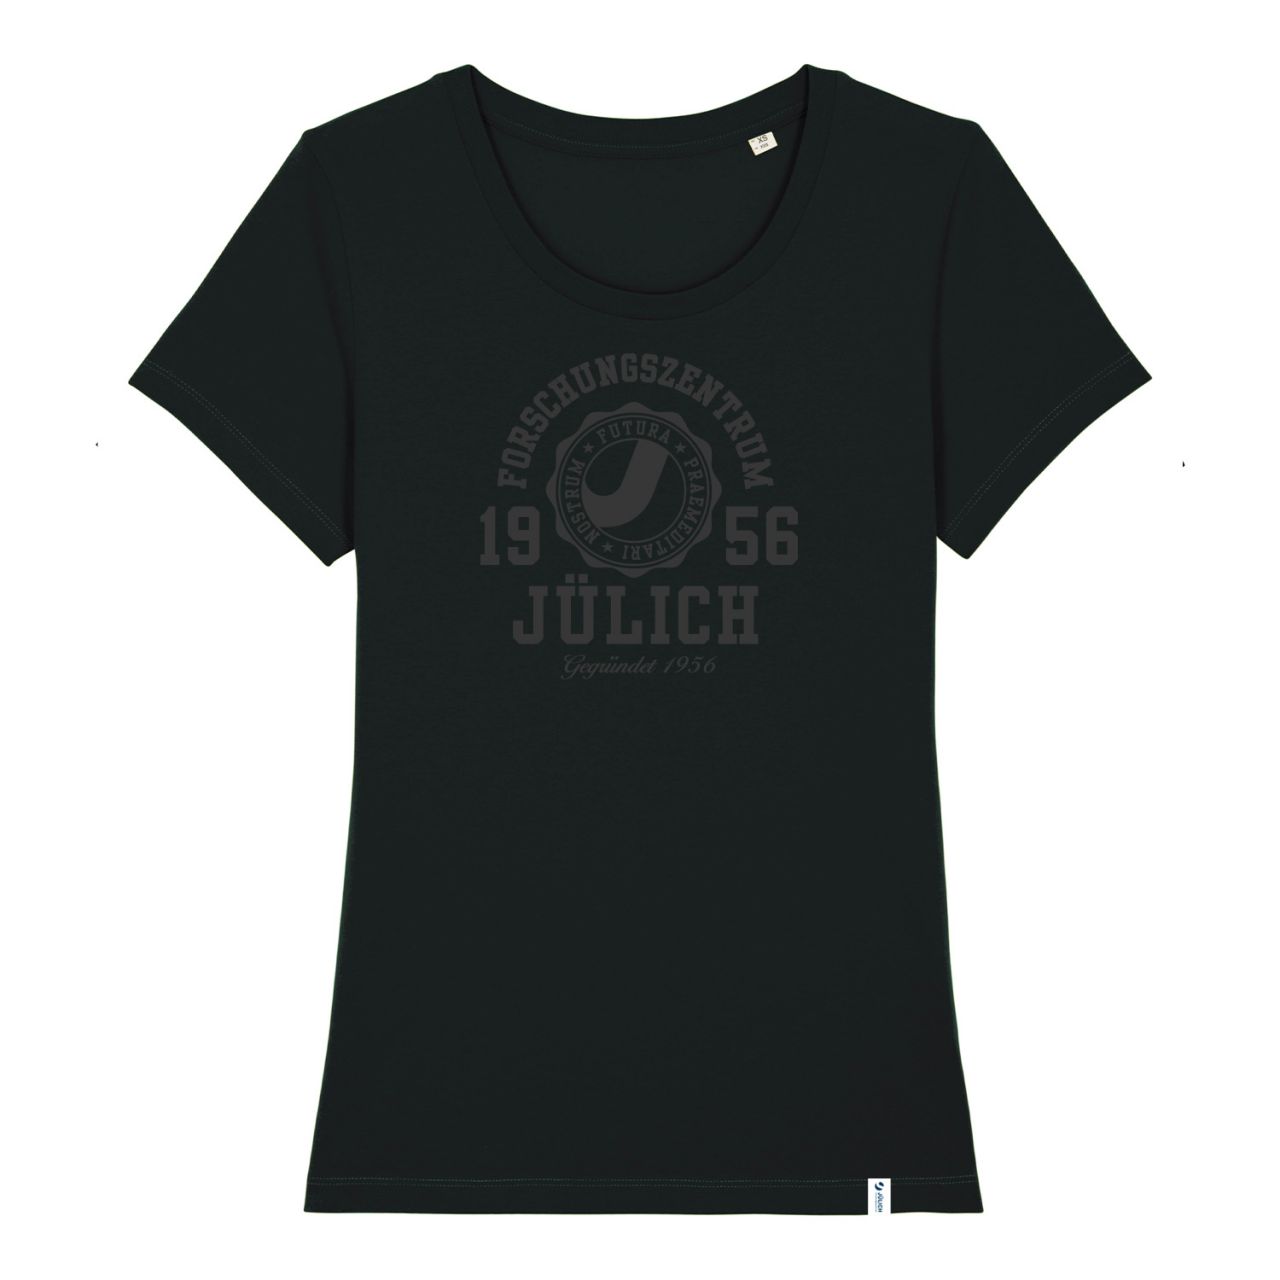 Damen Organic T-Shirt, black, marshall